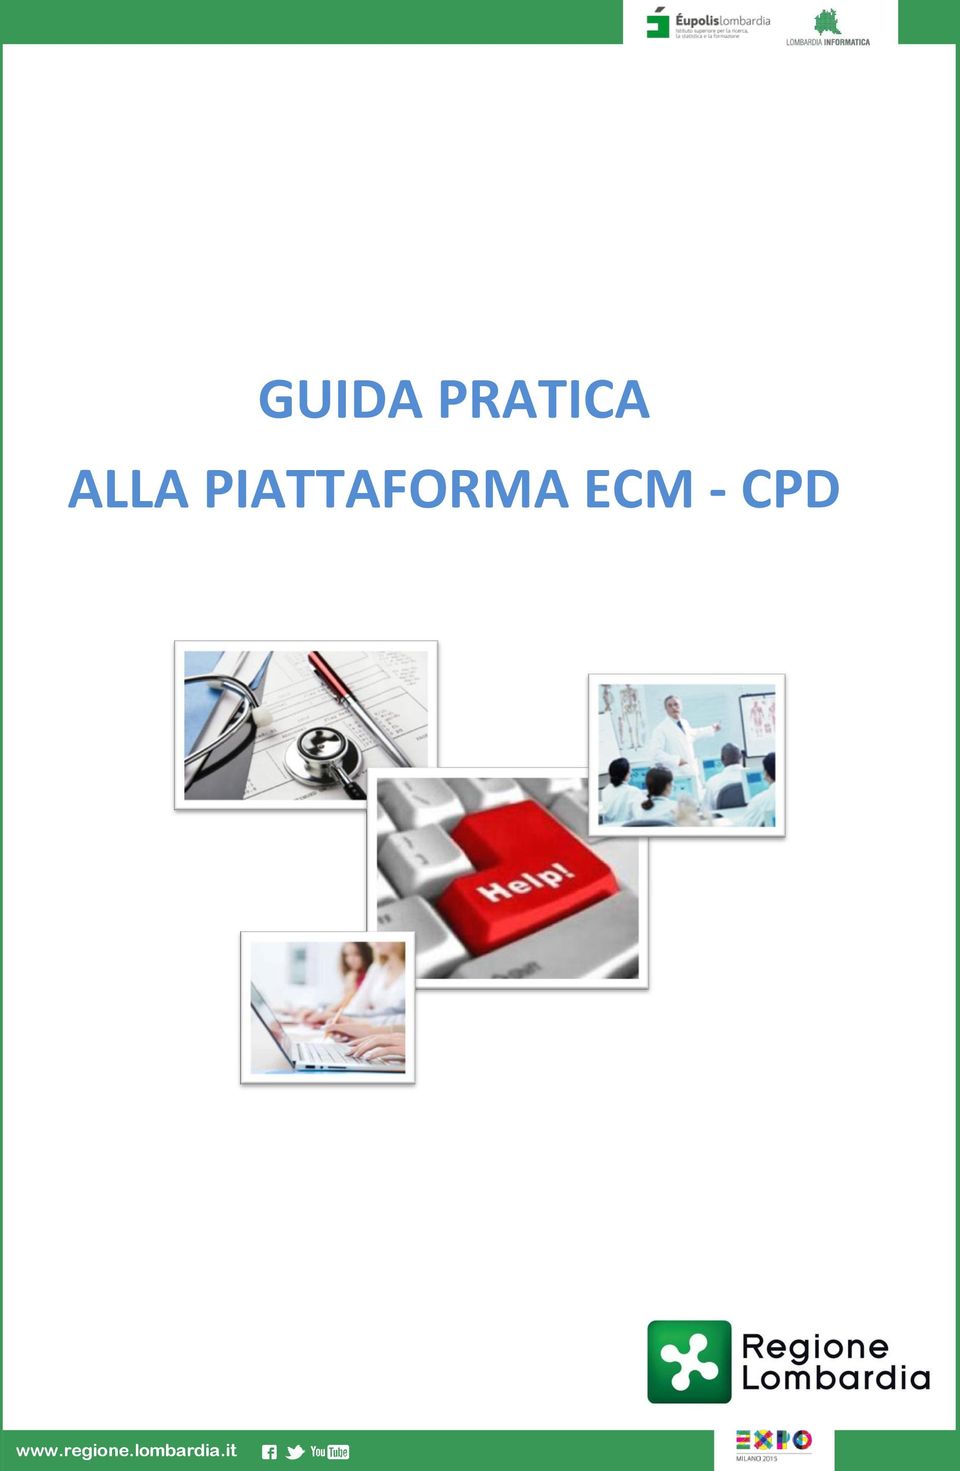 ECM - CPD www.